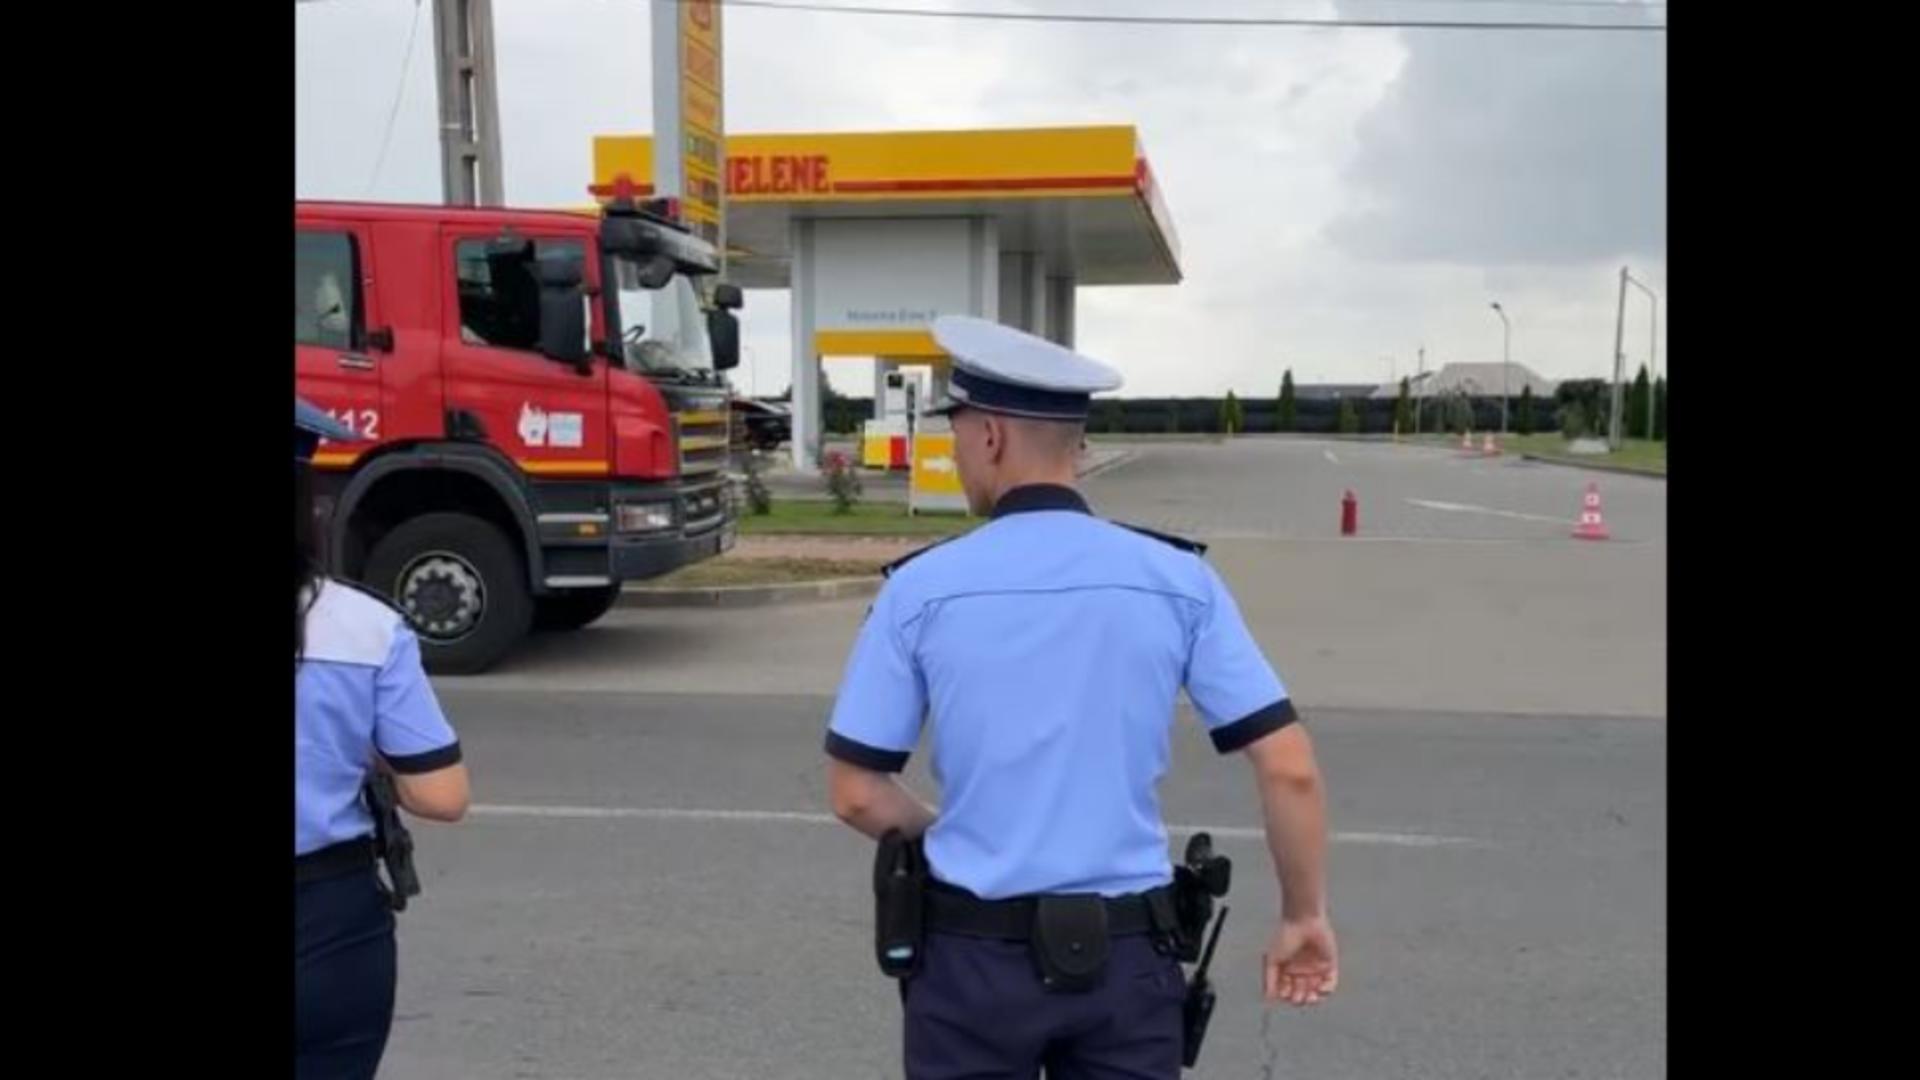 Alertă în Târgoviște. Un camion a intrat în plin într-o stație GPL VIDEO